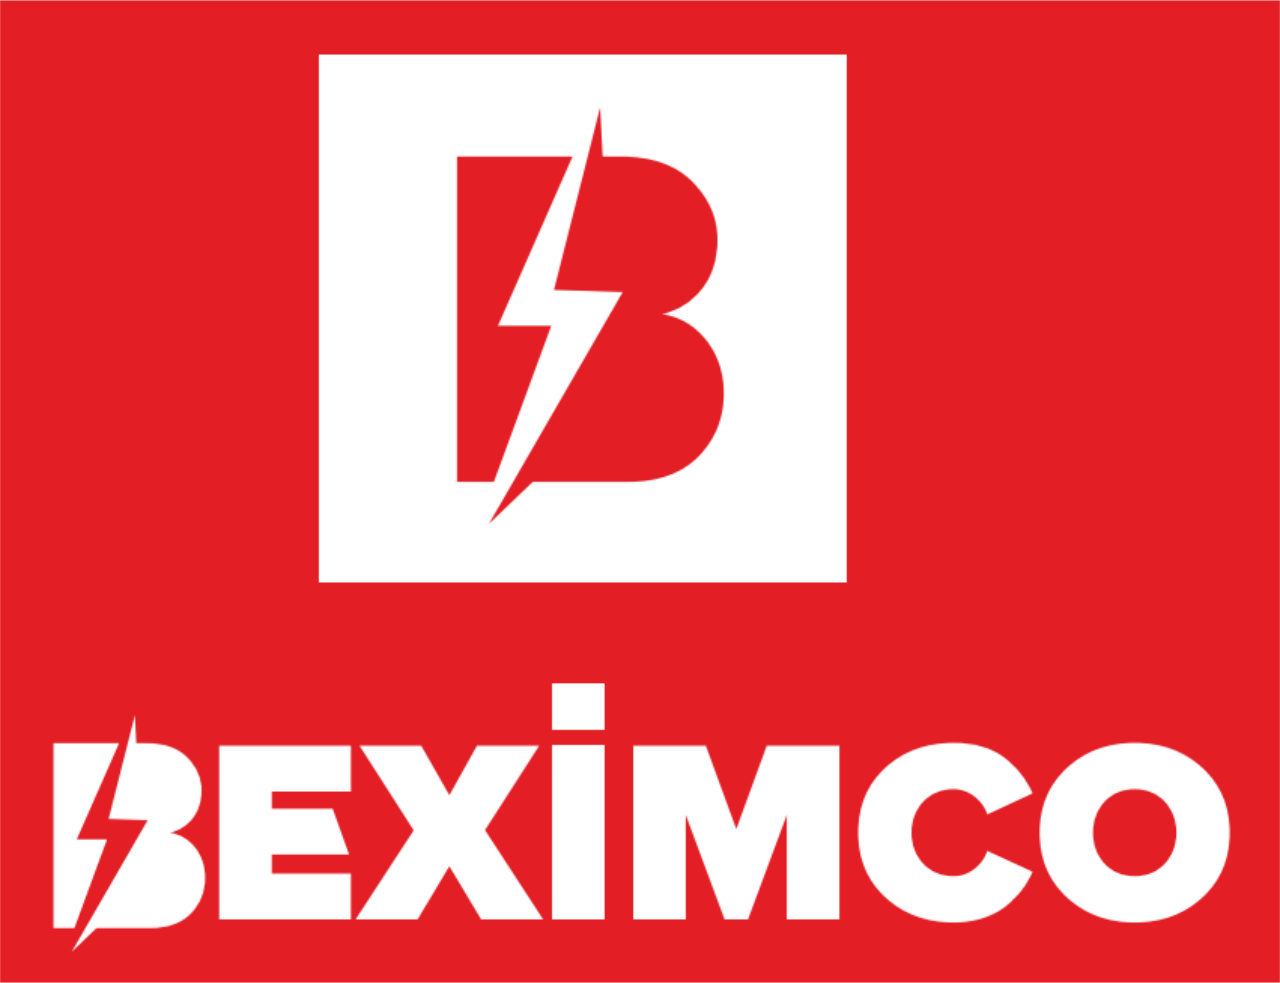 BEXIM CO's logo